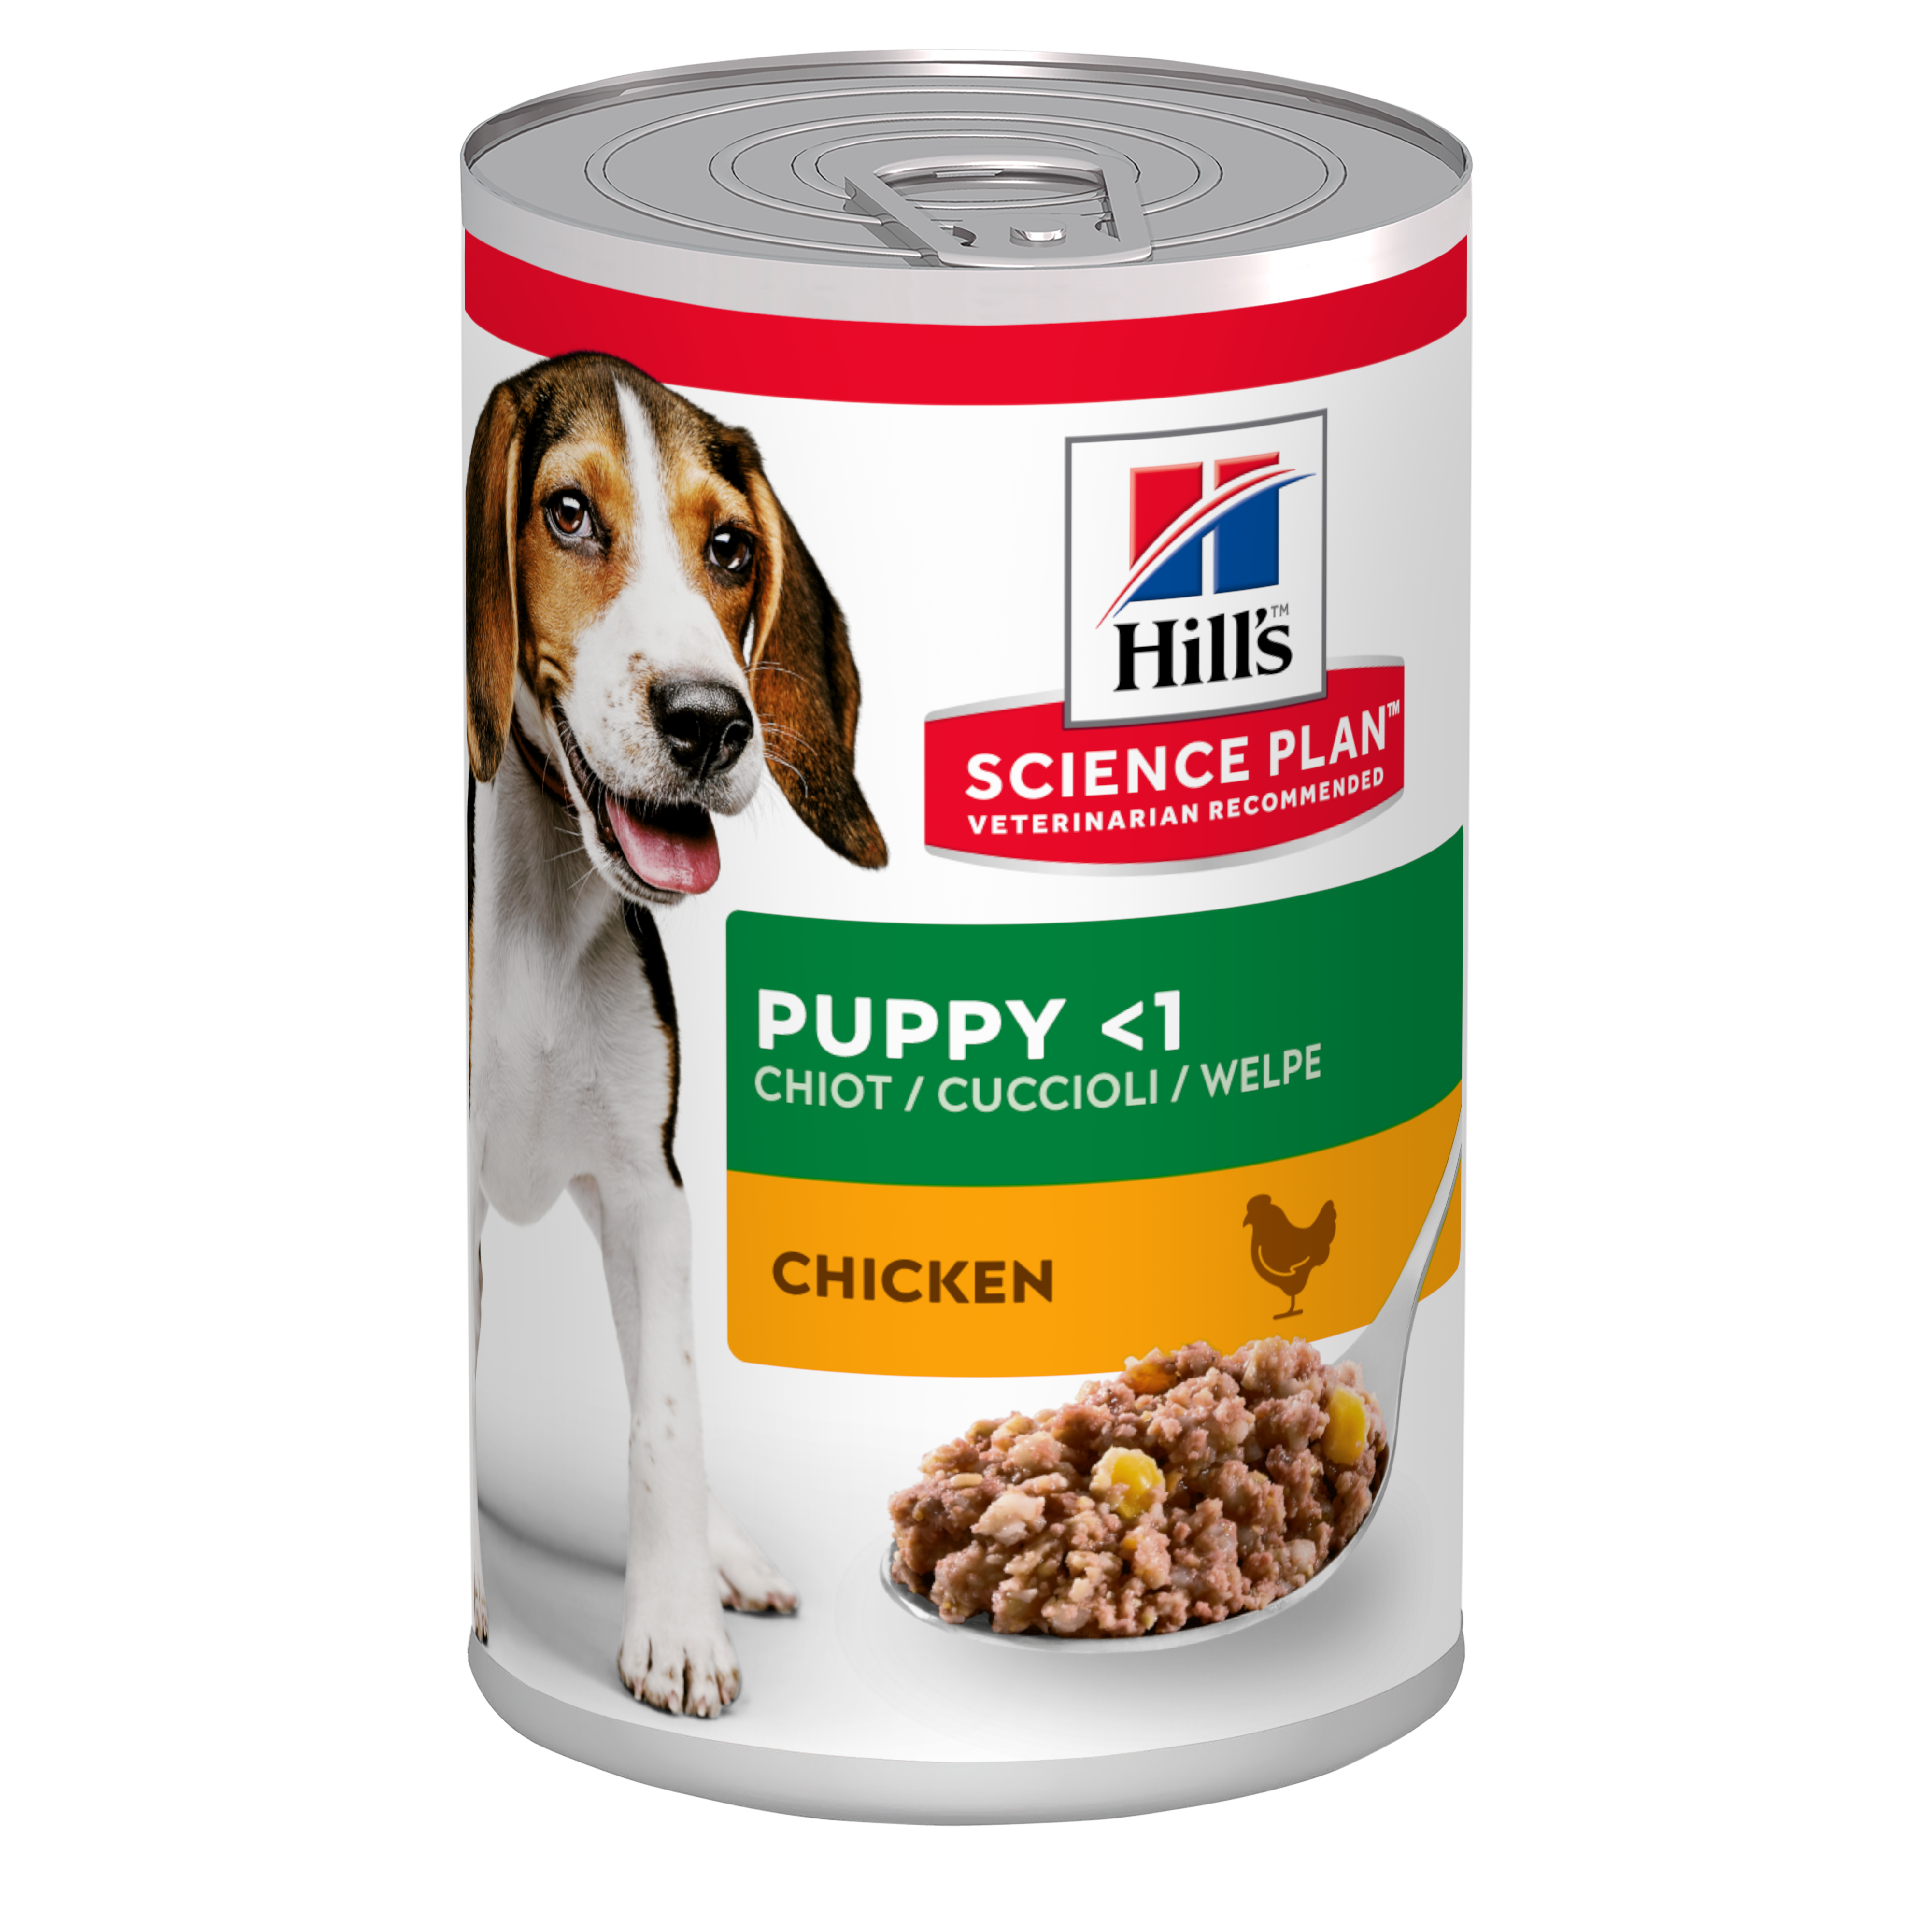 Hill's Science Plan Puppy boite pour chiot poulet 370 g